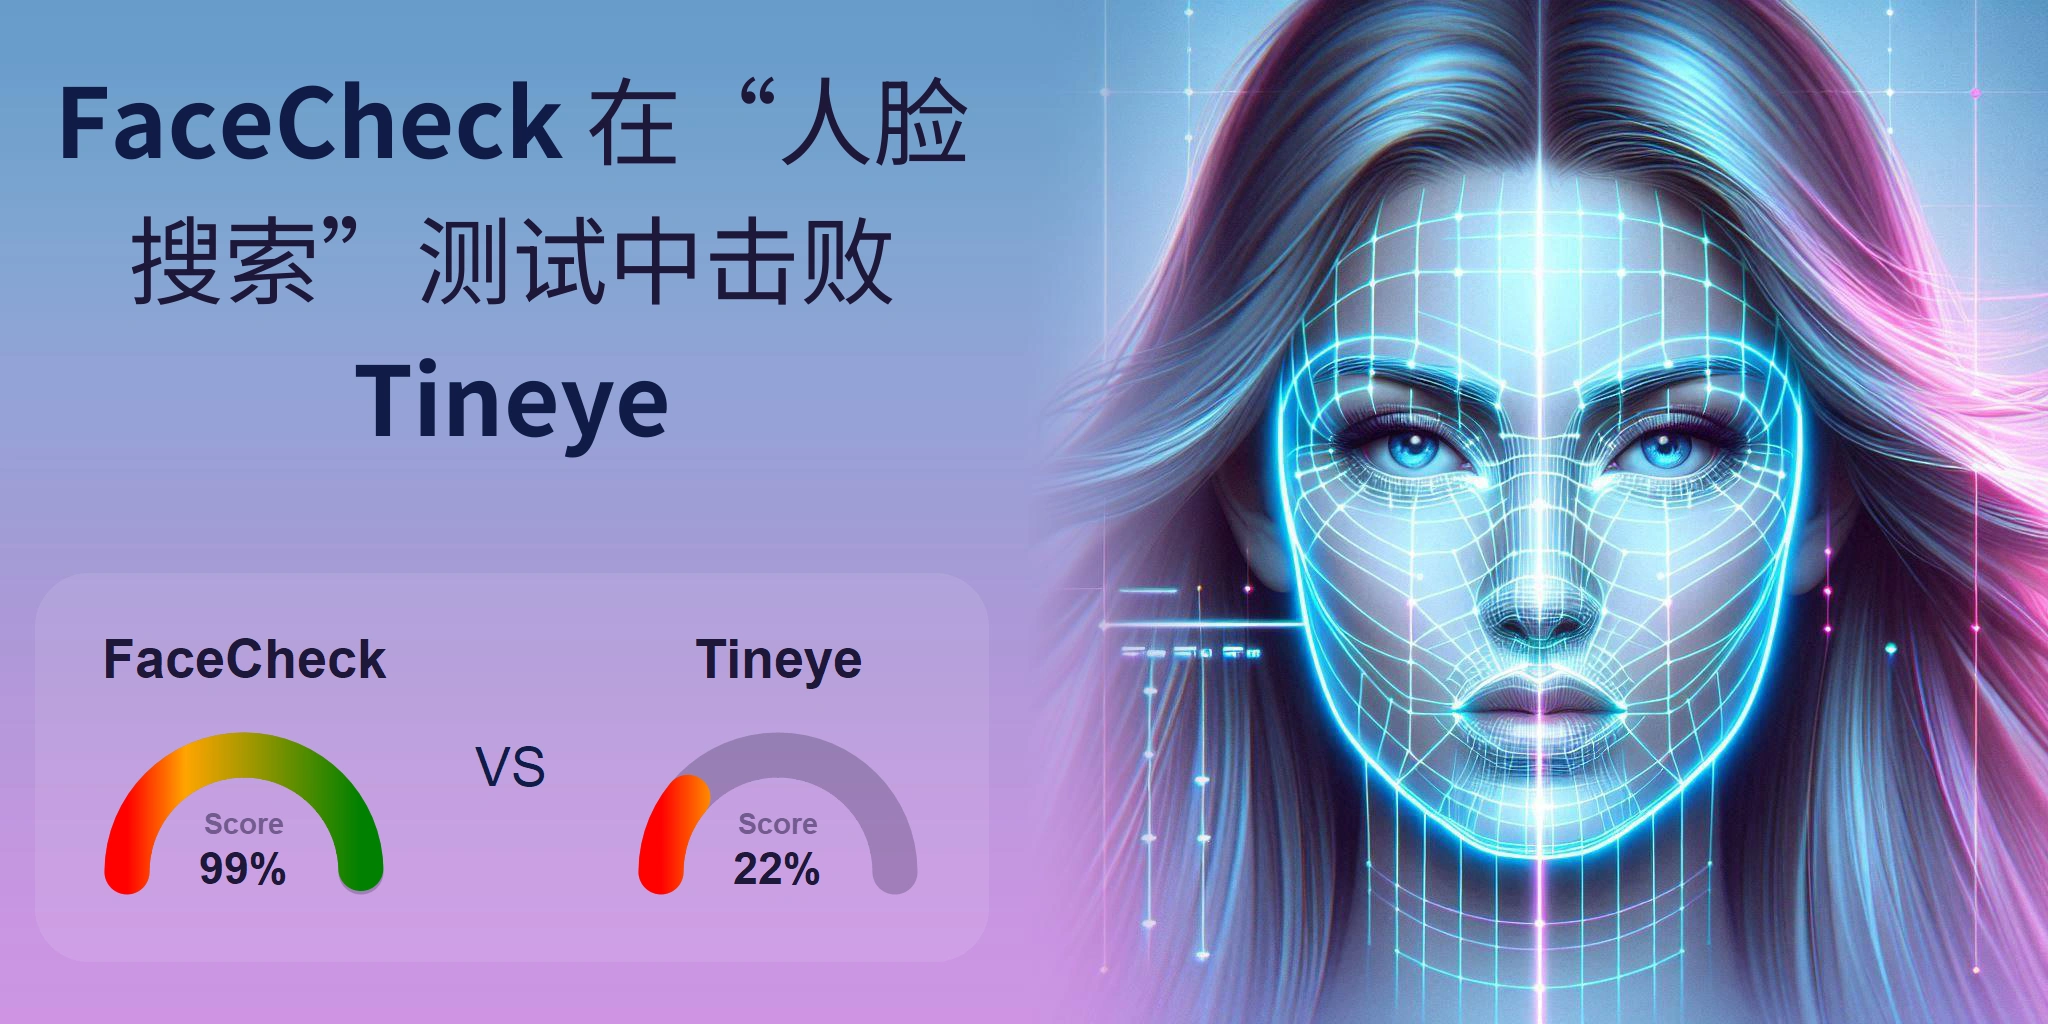 哪一个更适合人脸搜索：<br>FaceCheck 还是 Tineye？